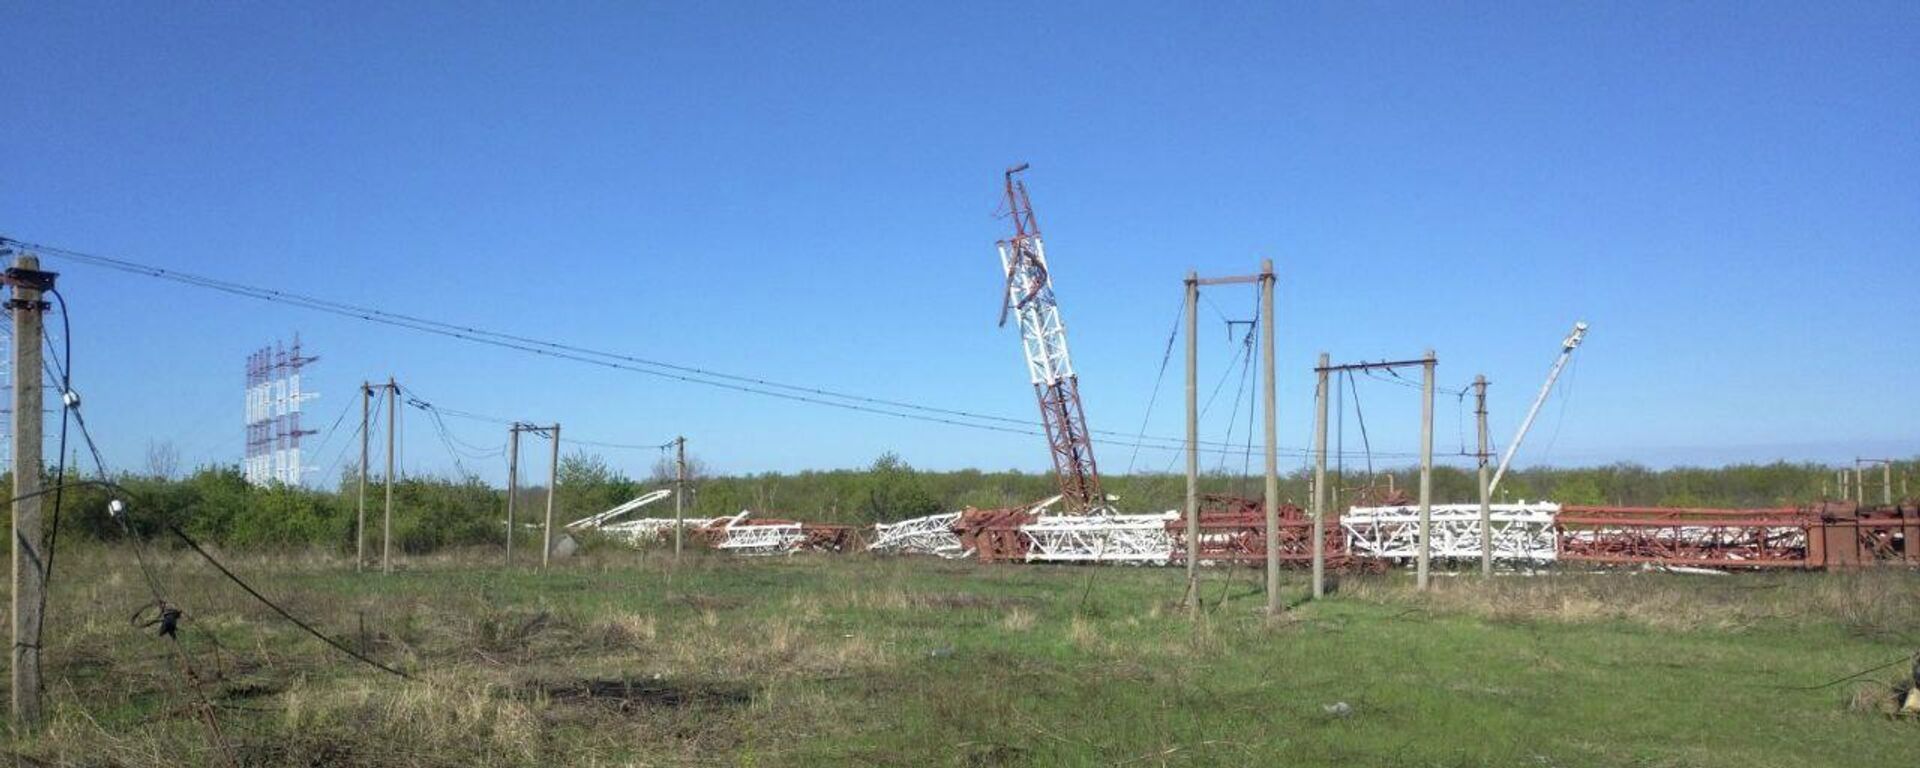 Antenas que retransmitiam estações de rádio russas destruídas na localidade de Mayak, na não reconhecida República Moldava de Transnístria, foto publicada em 26 de abril de 2022 - Sputnik Brasil, 1920, 27.04.2022